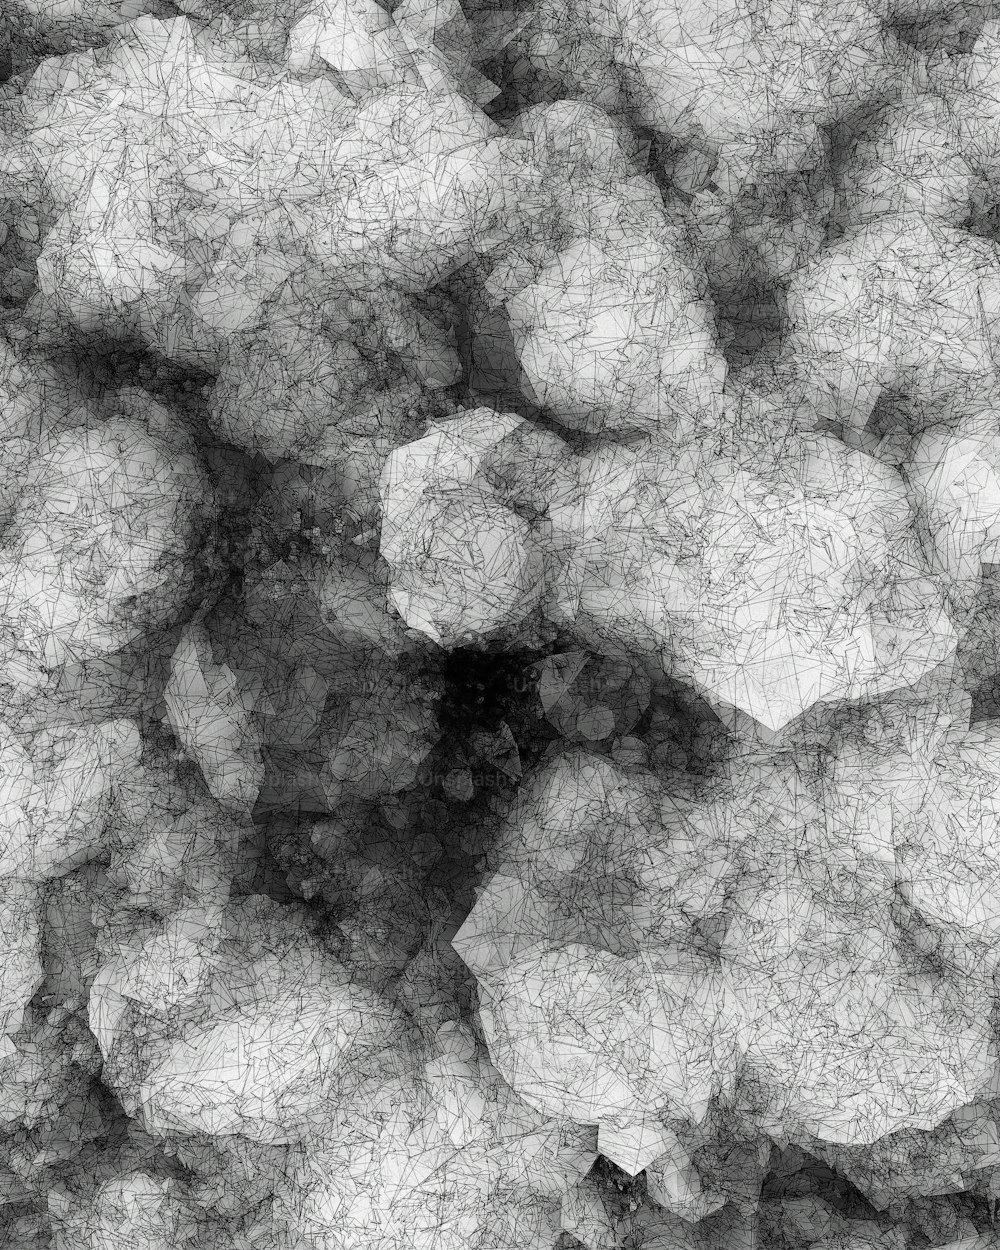 uma foto em preto e branco de um monte de bolhas